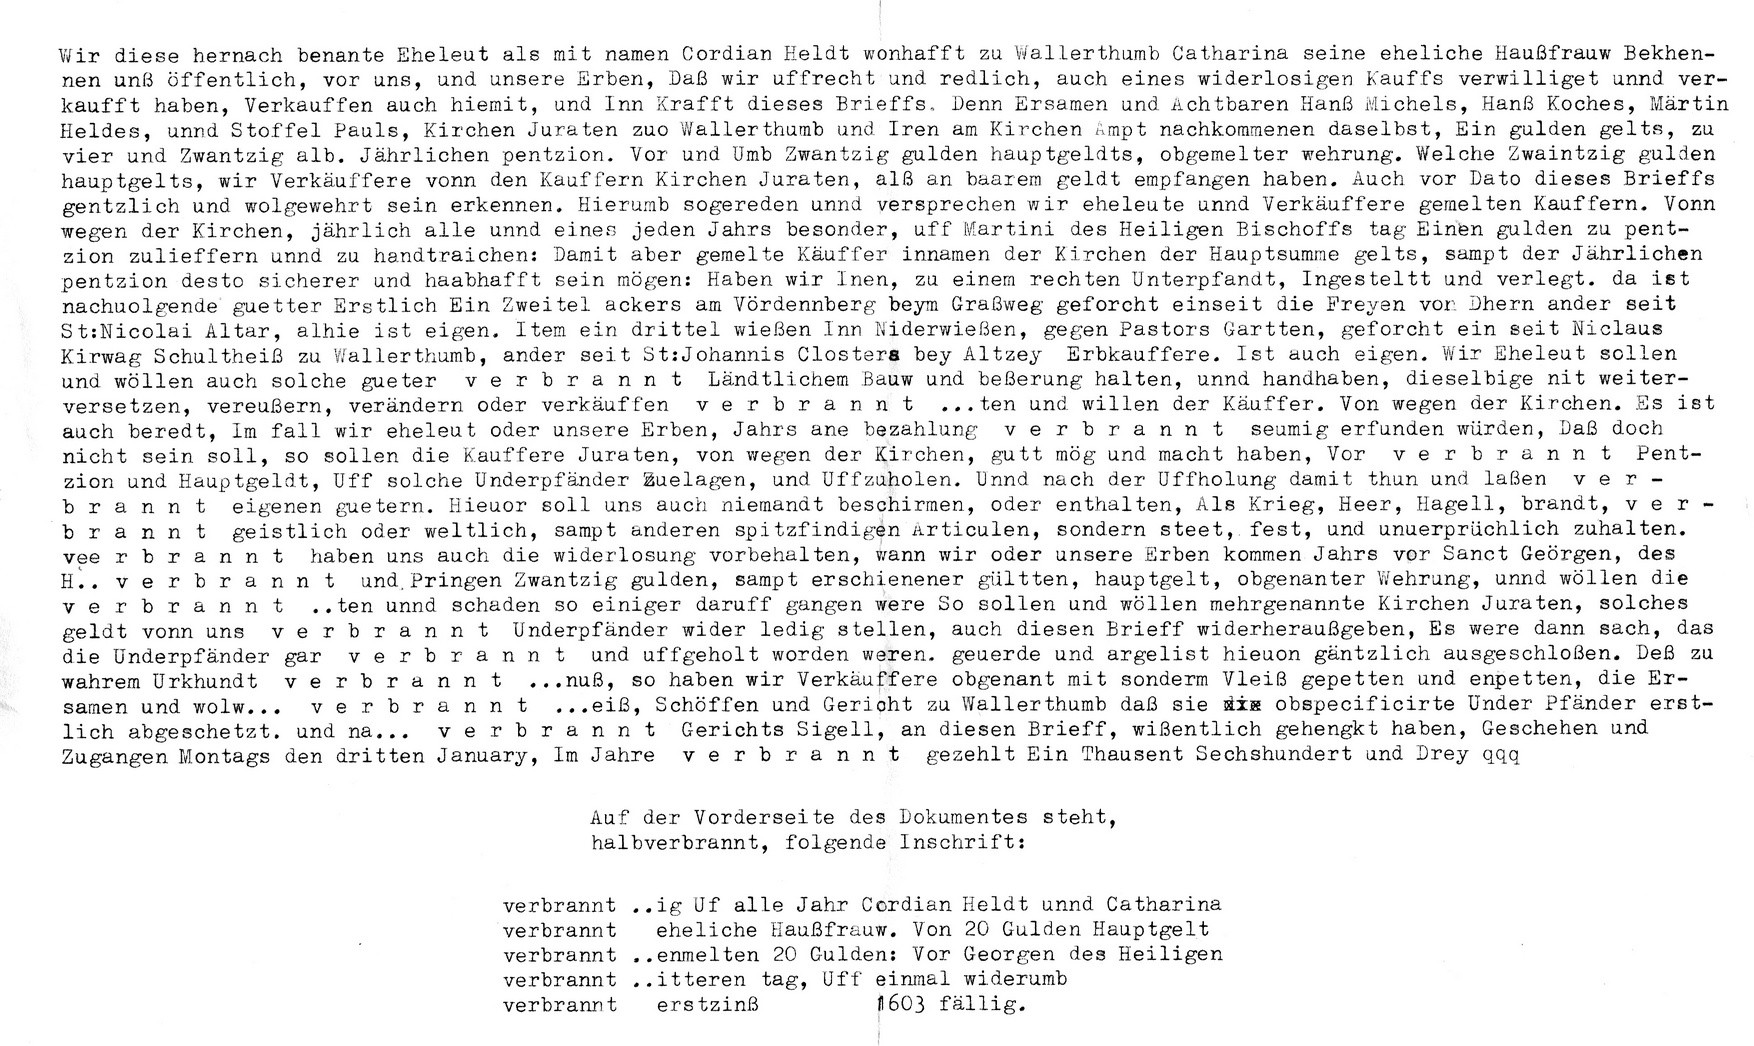 Transkription der Urkunde Wallertheim 1603 (Kulturverein Guntersblum CC BY-NC-SA)